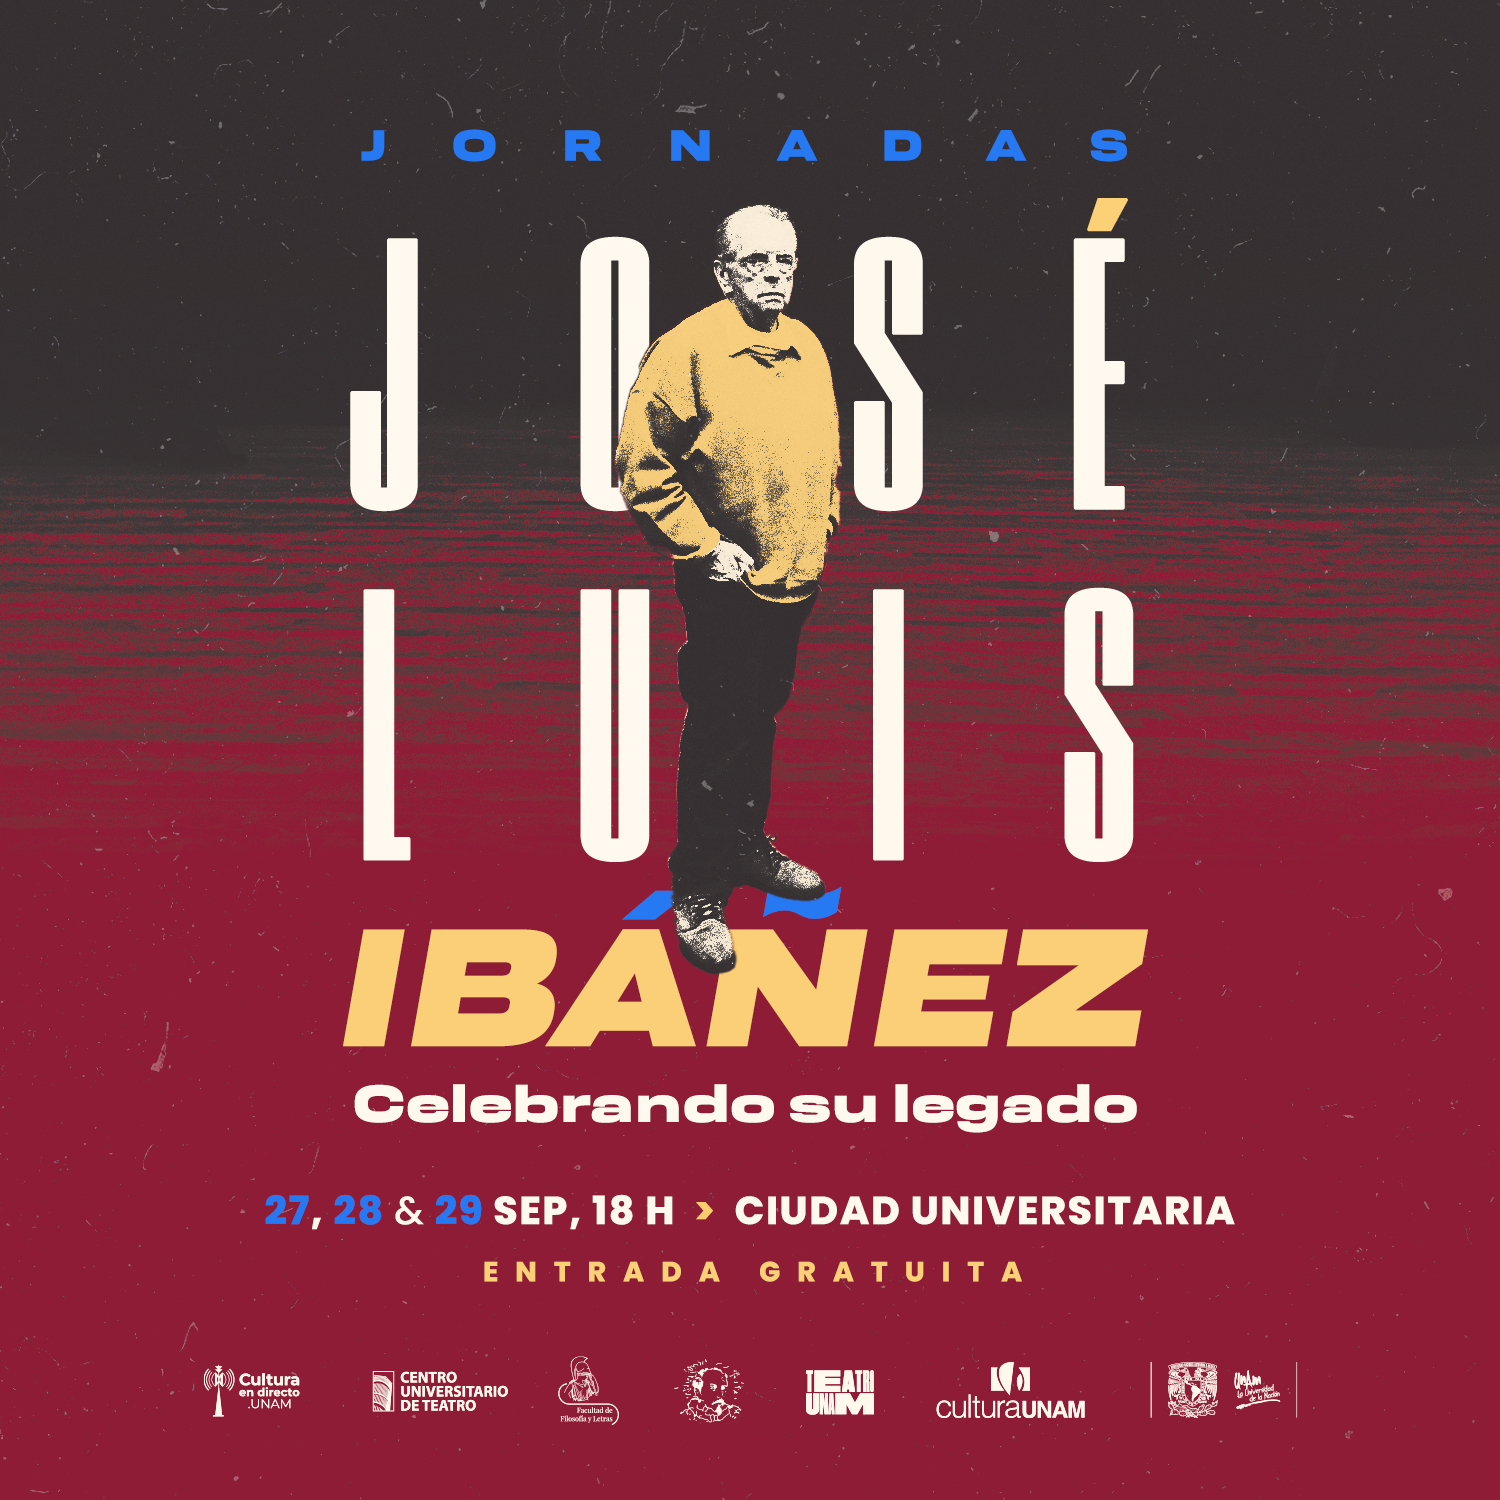 Celebrarán legado de José Luis Ibáñez con Jornadas  en Ciudad Universitaria